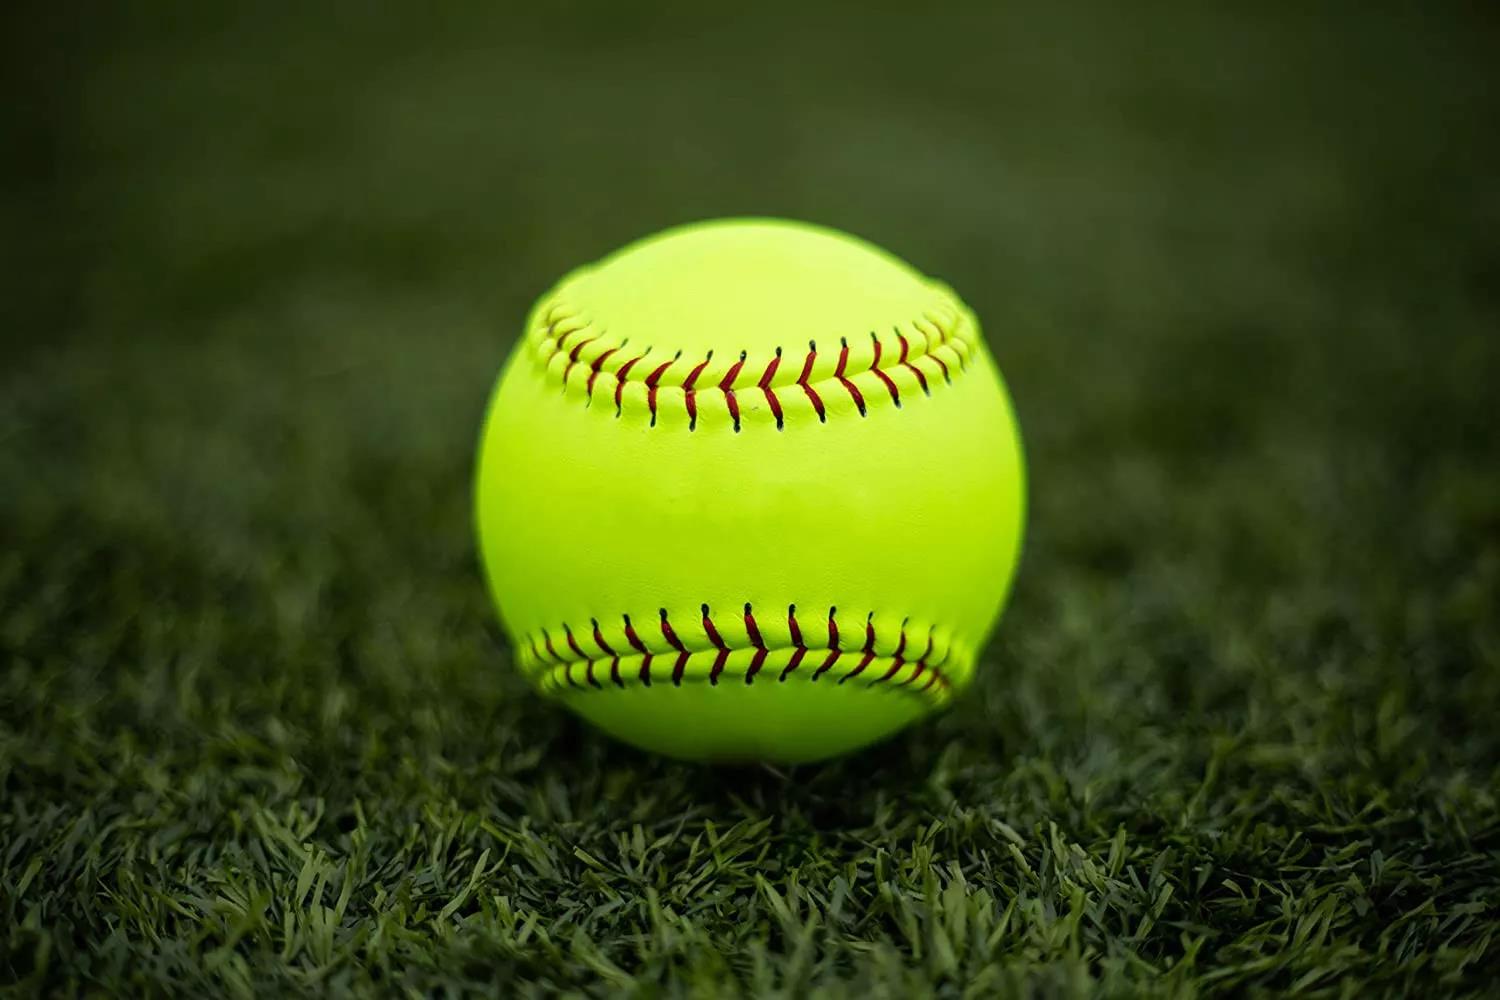 Offizielle Größe und Gewicht, individuell angepasster Logo-bedruckter Softball aus weichem Schaumstoff in der Mitte, grüner PVC-Kunstleder-Softball